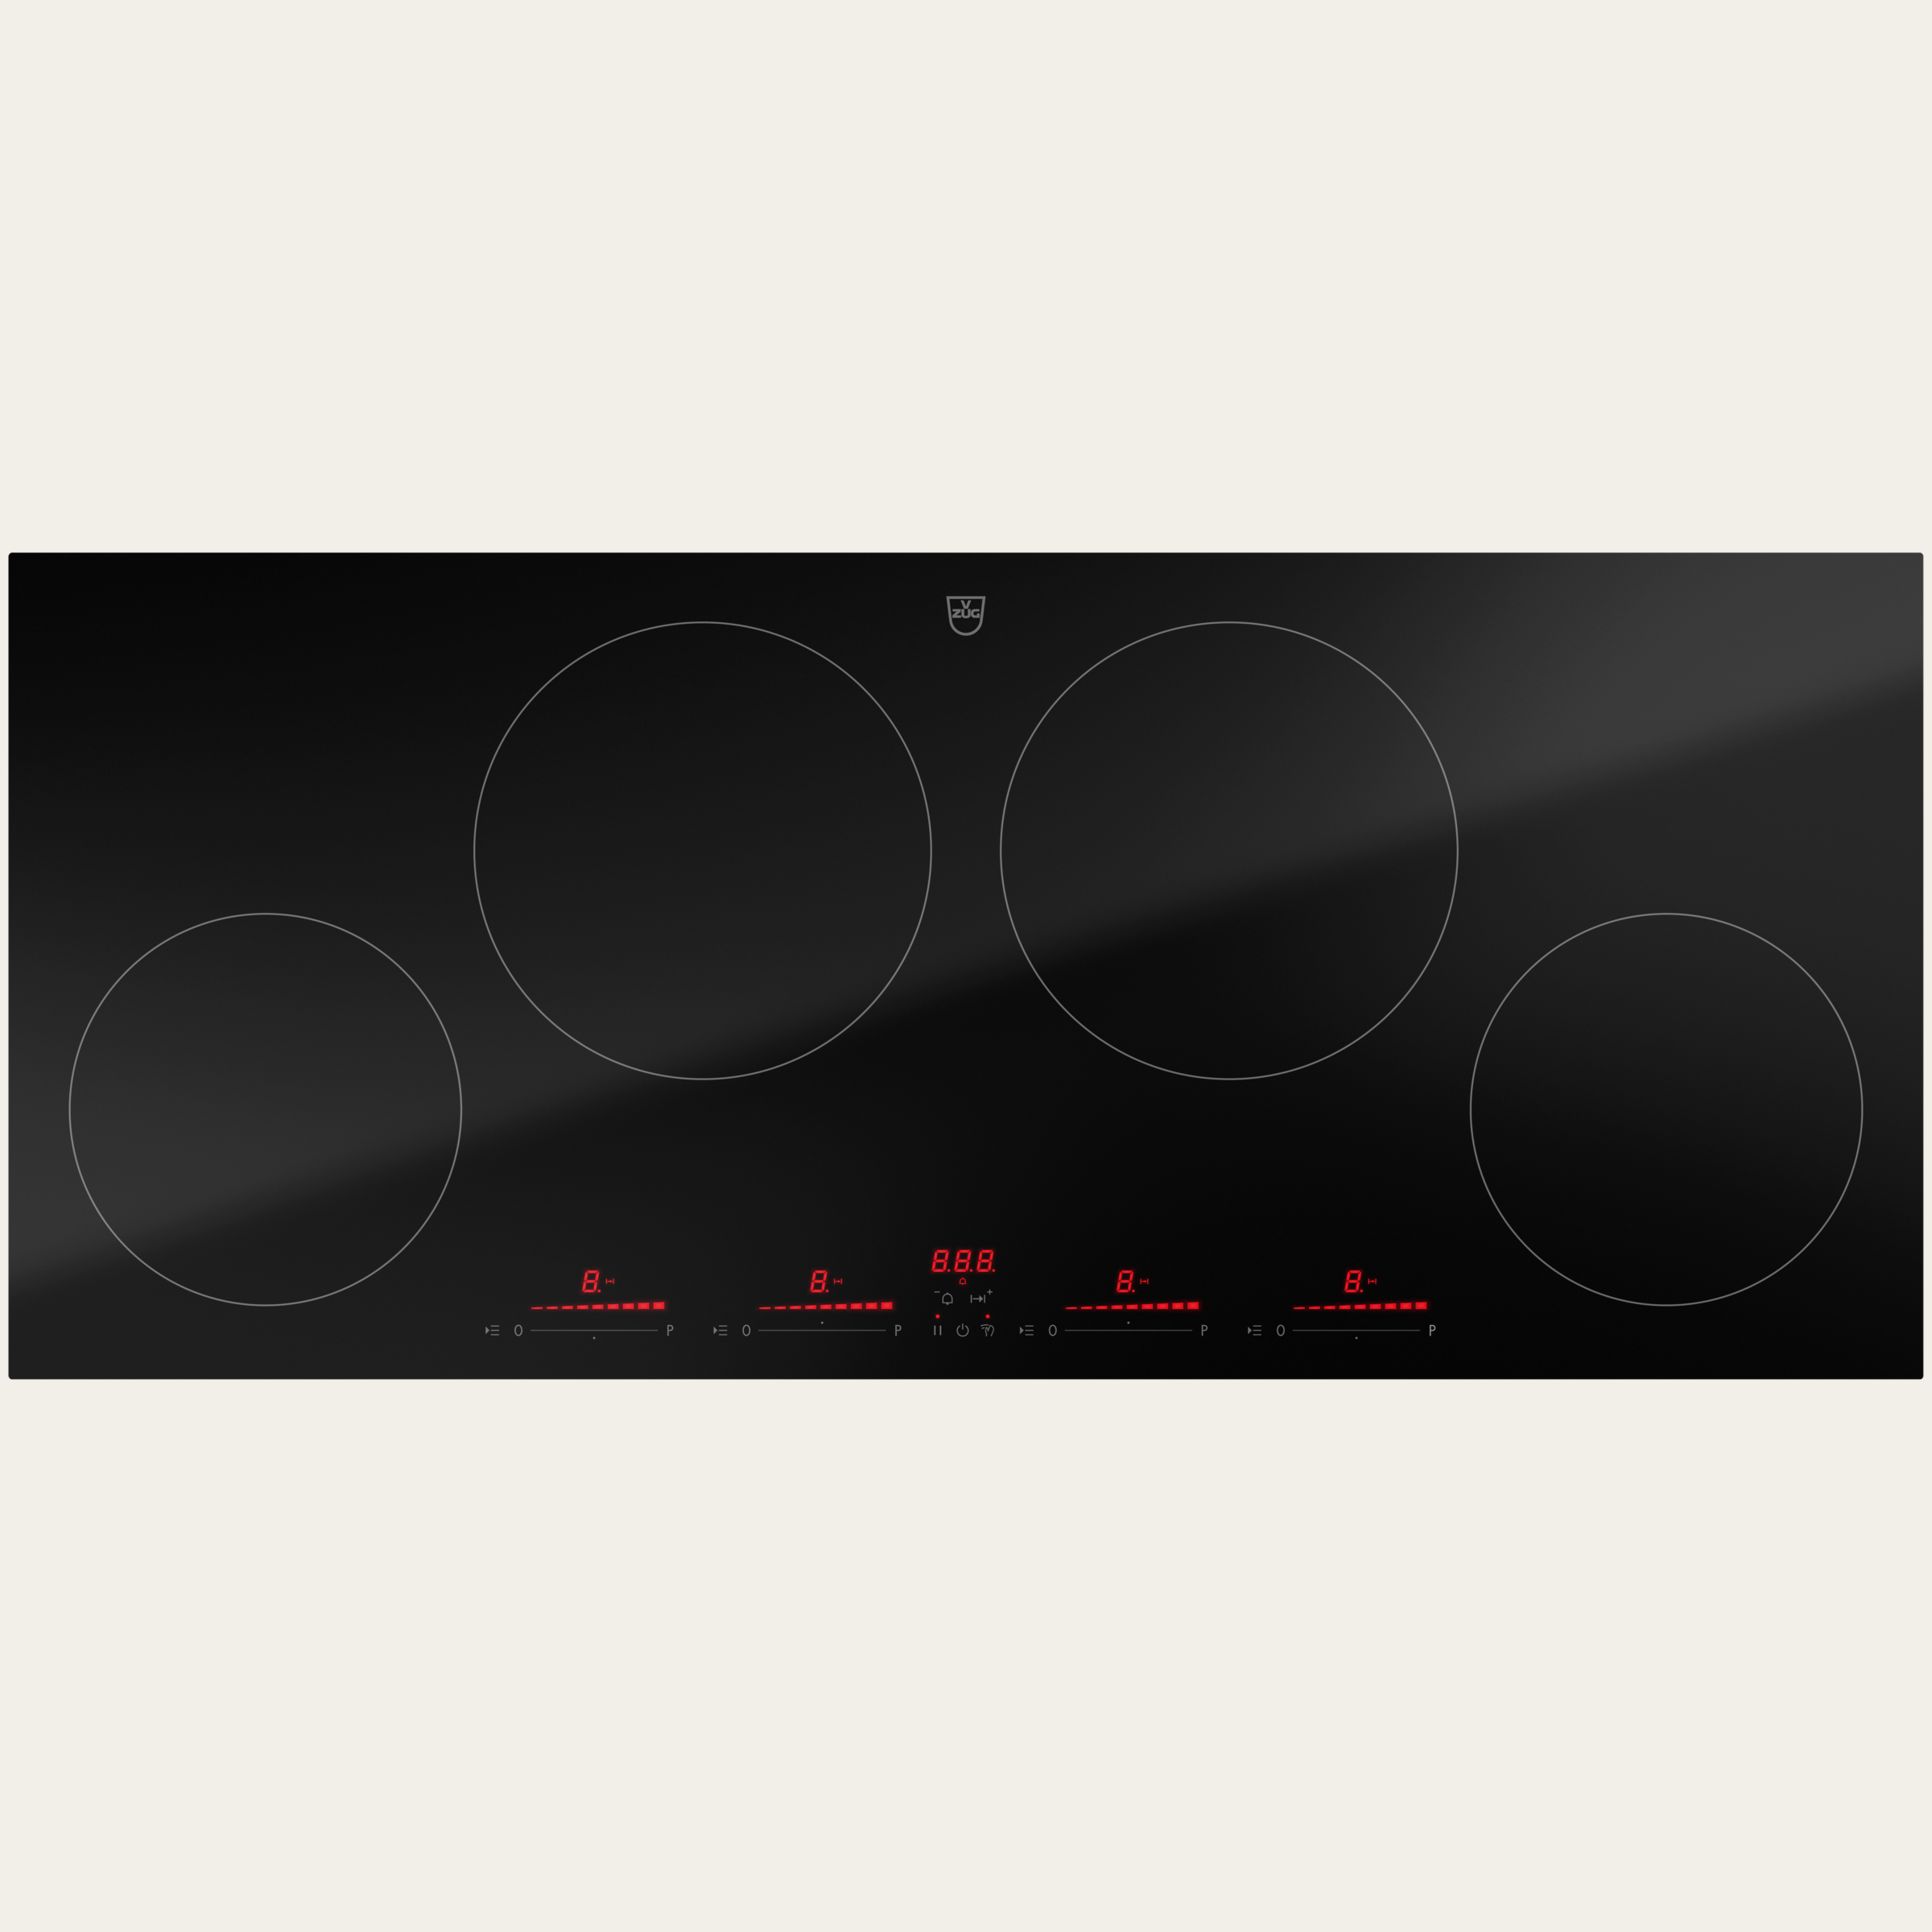 V-ZUG Hob CookTop V4000 I904, Induction, Standard width: 90 cm, BlackDesign, DualDesign, Multi-Slider/direct selection, Slider control, Cooking zones: 4